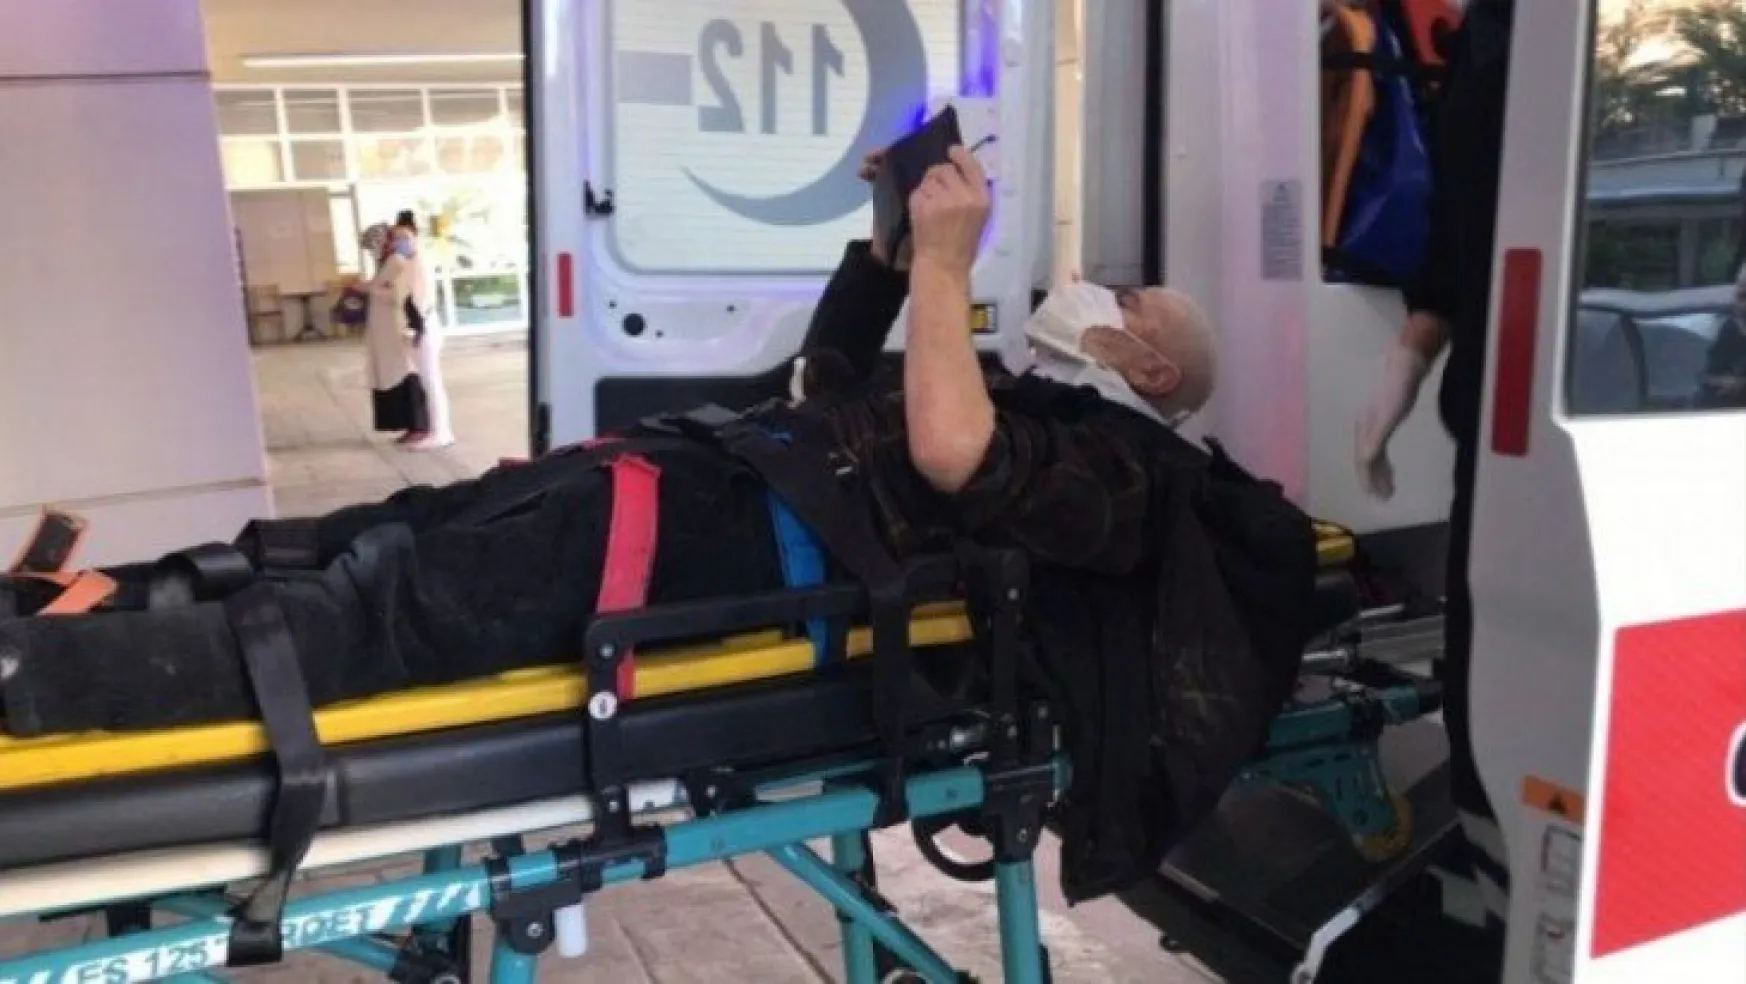 Marangozda 3 metre yükseklikten düşen şahıs yaralandı